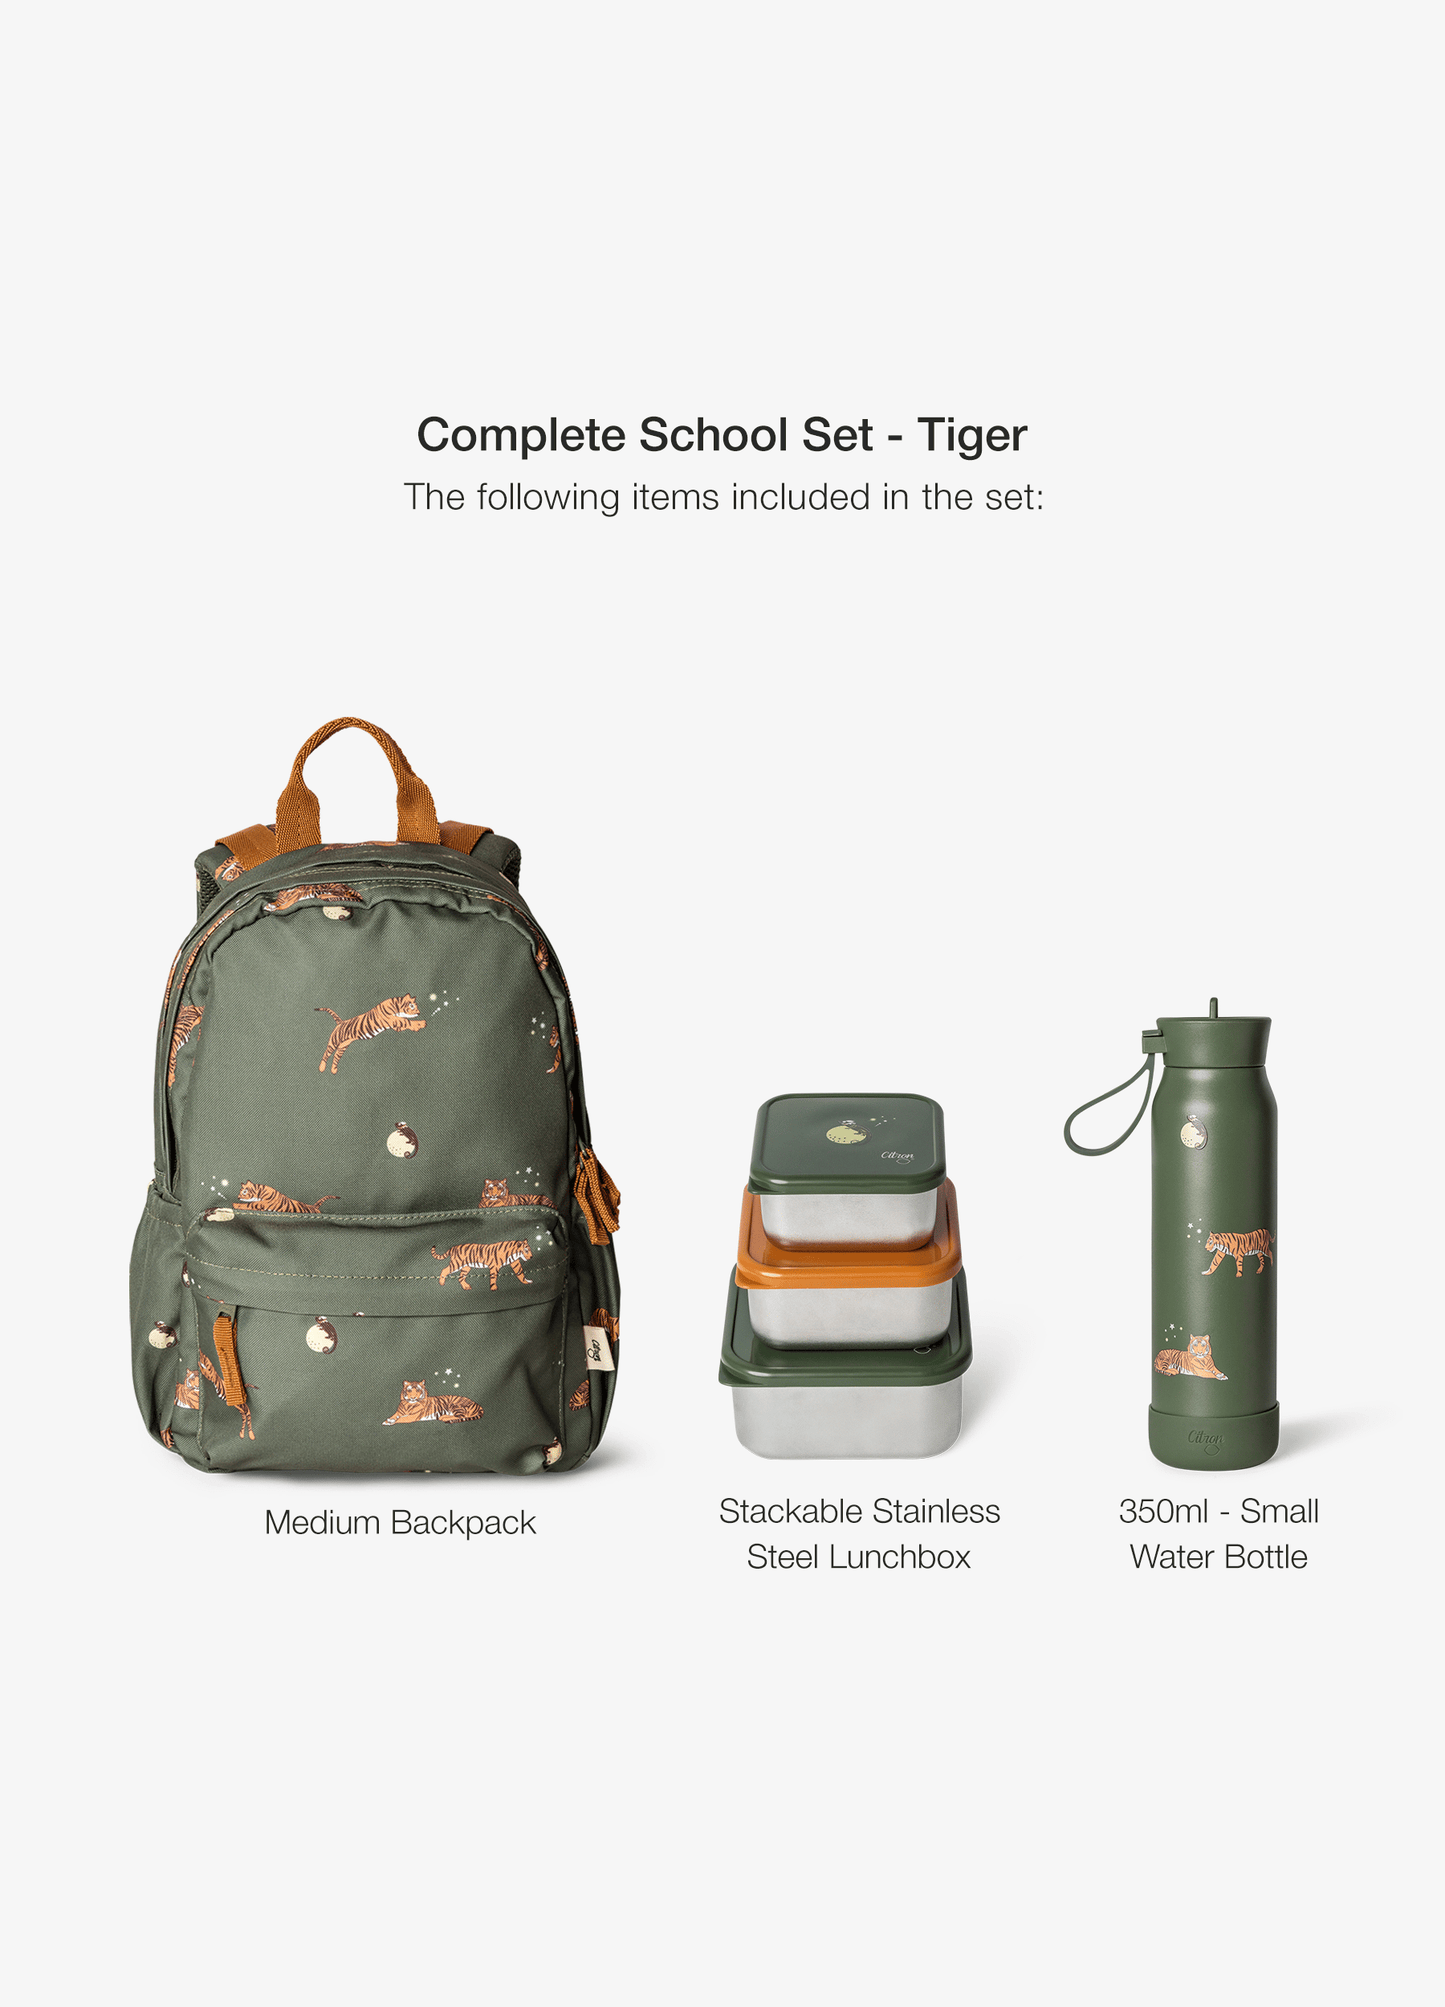 Complete School Set - Set of 4 - Tiger